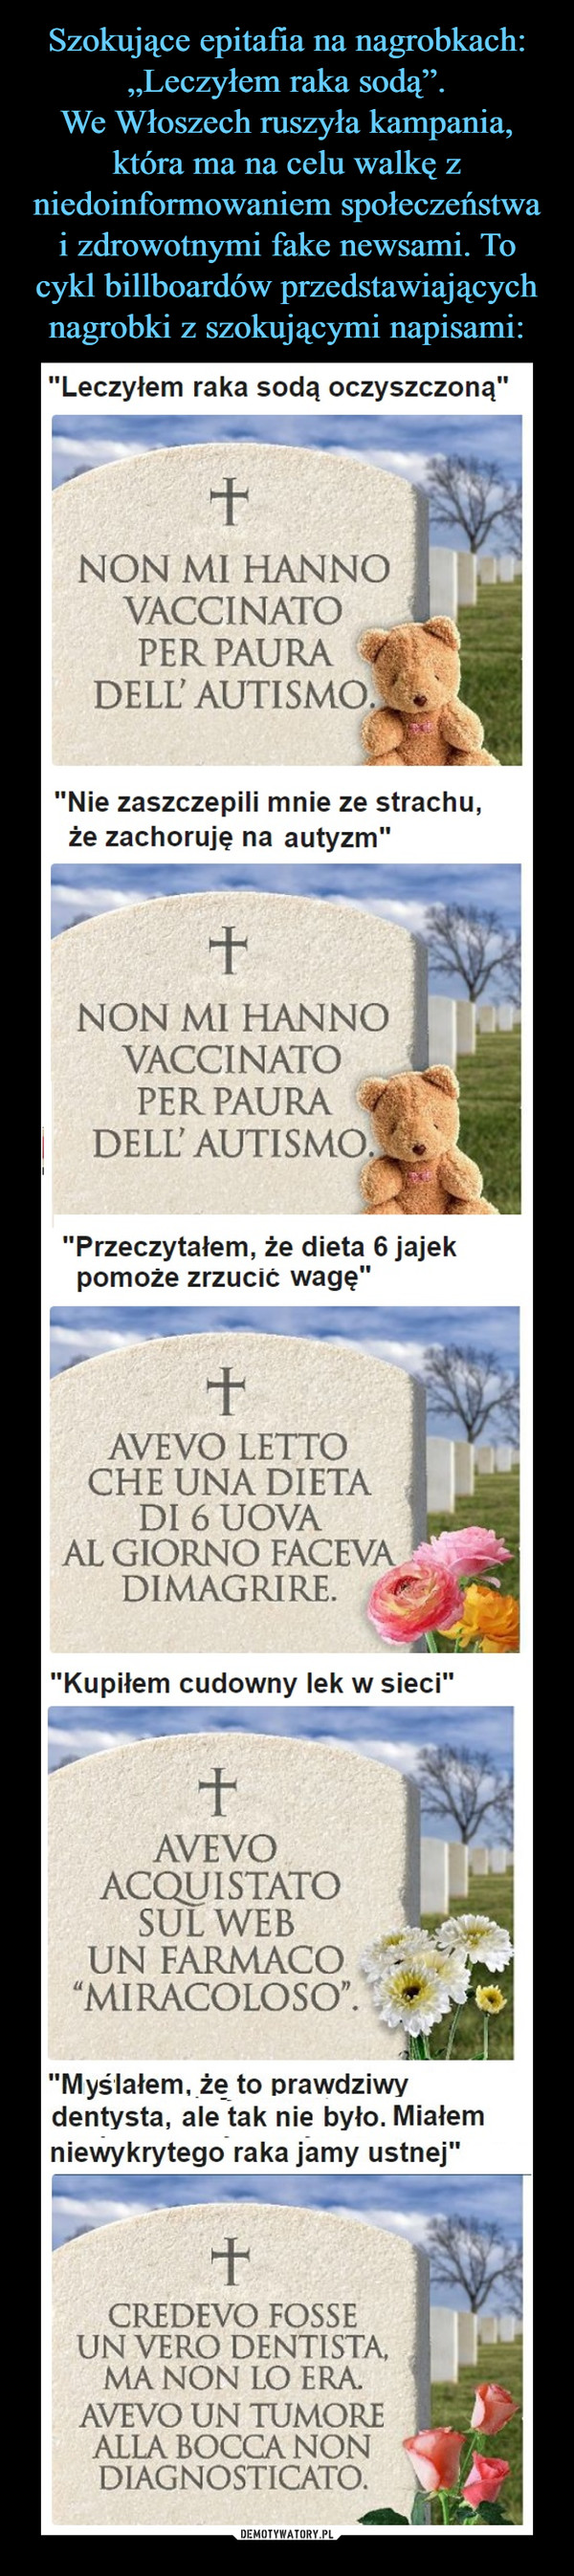 Szokujące epitafia na nagrobkach: „Leczyłem raka sodą”.
We Włoszech ruszyła kampania, która ma na celu walkę z niedoinformowaniem społeczeństwa i zdrowotnymi fake newsami. To cykl billboardów przedstawiających nagrobki z szokującymi napisami: